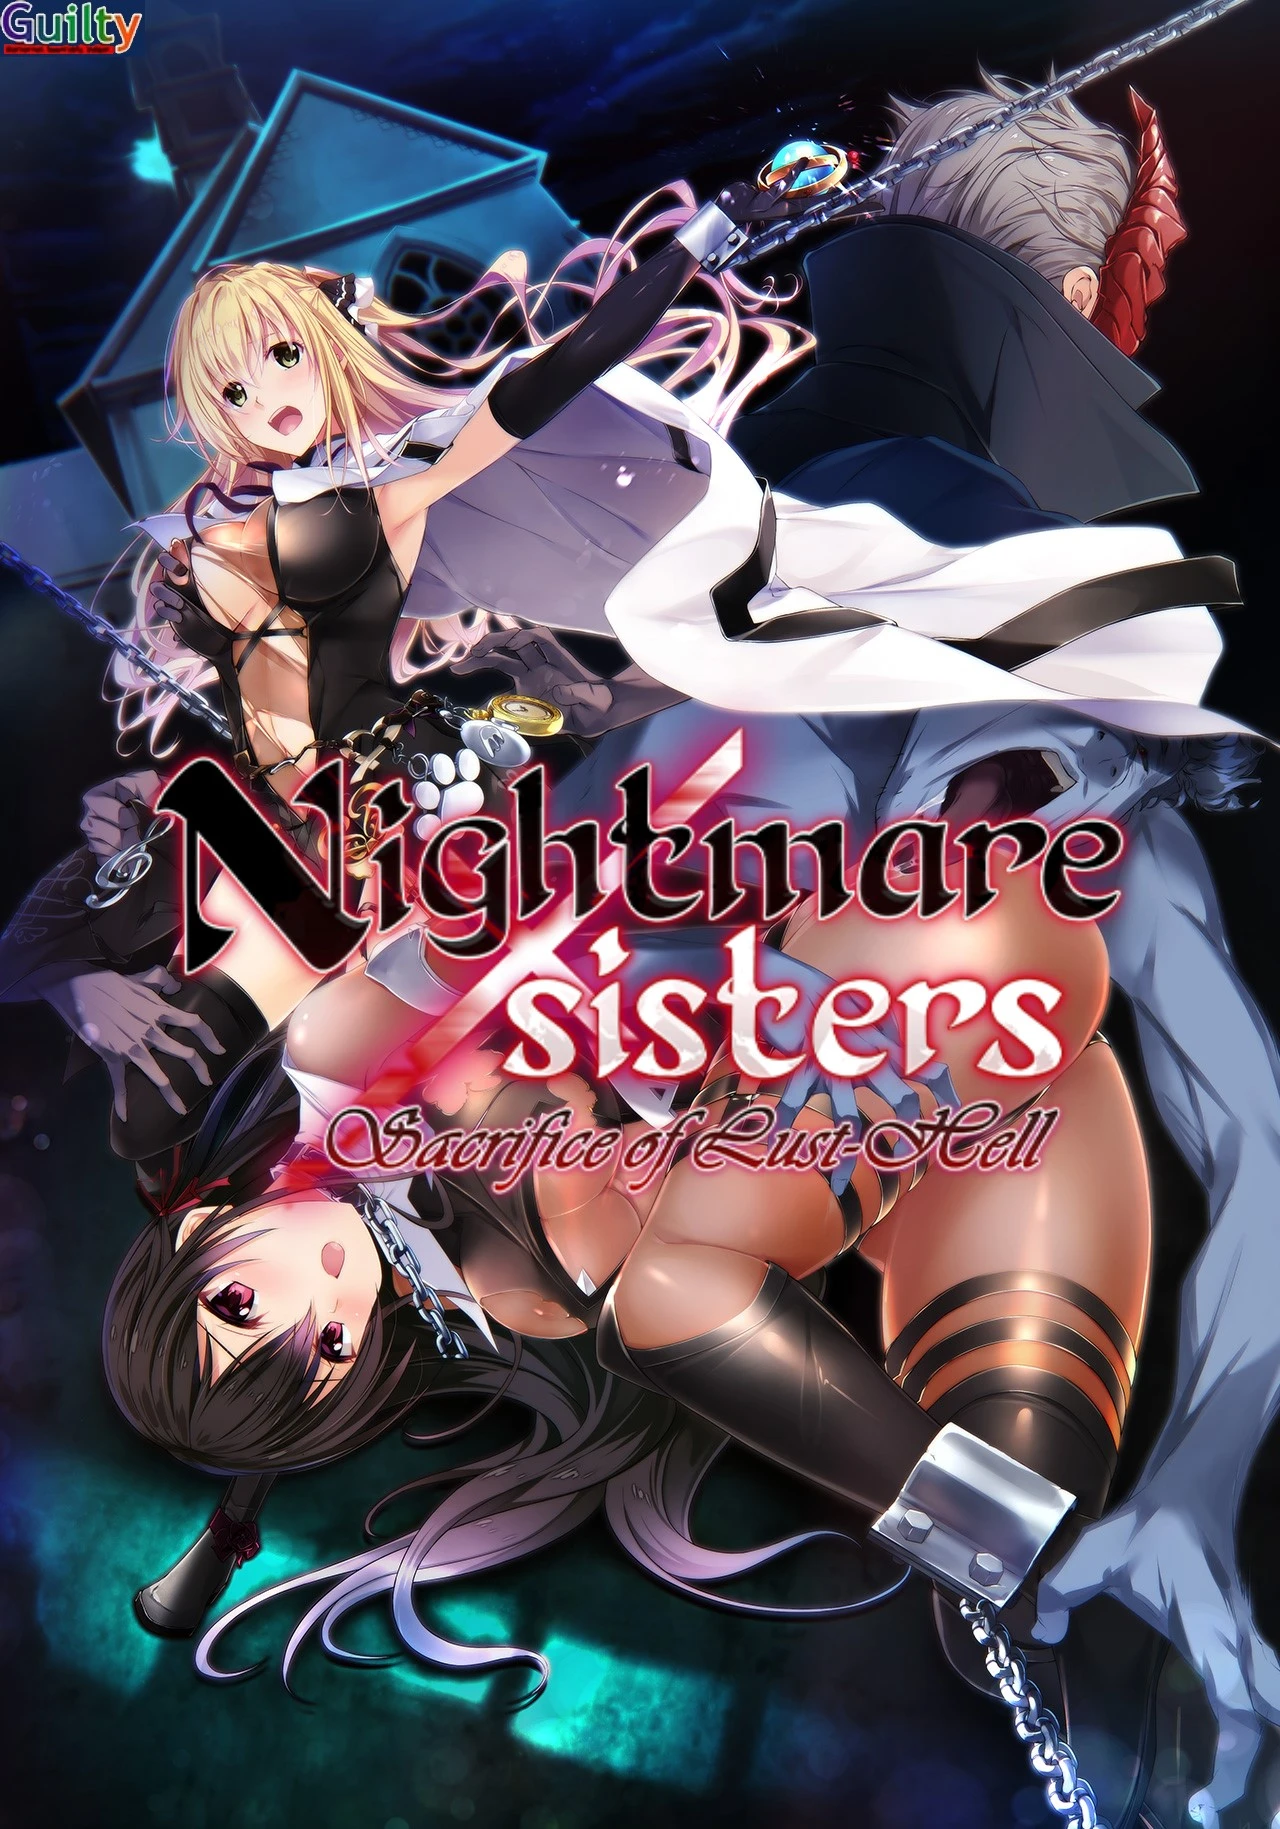 Nightmare x Sisters - Sacrifice of Lust-Hell main image